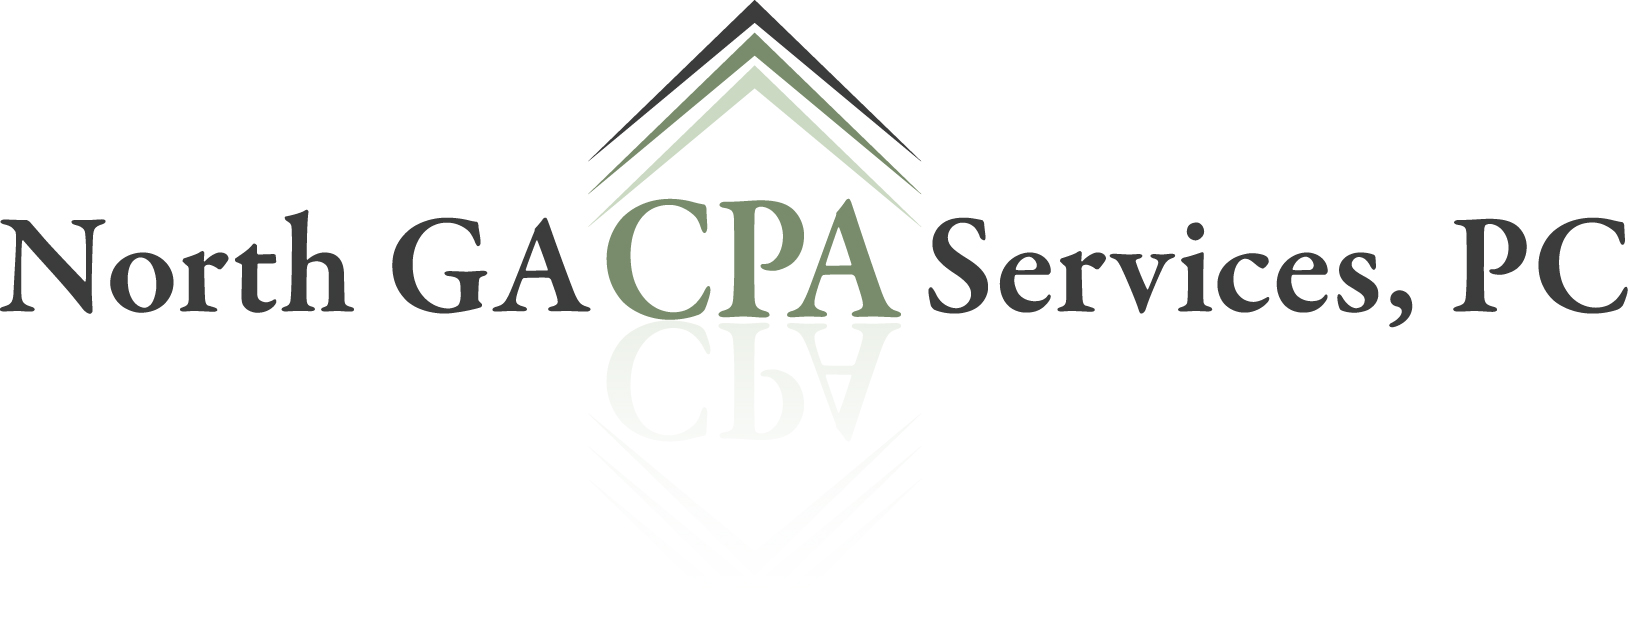 North GA CPA Services, P.C.